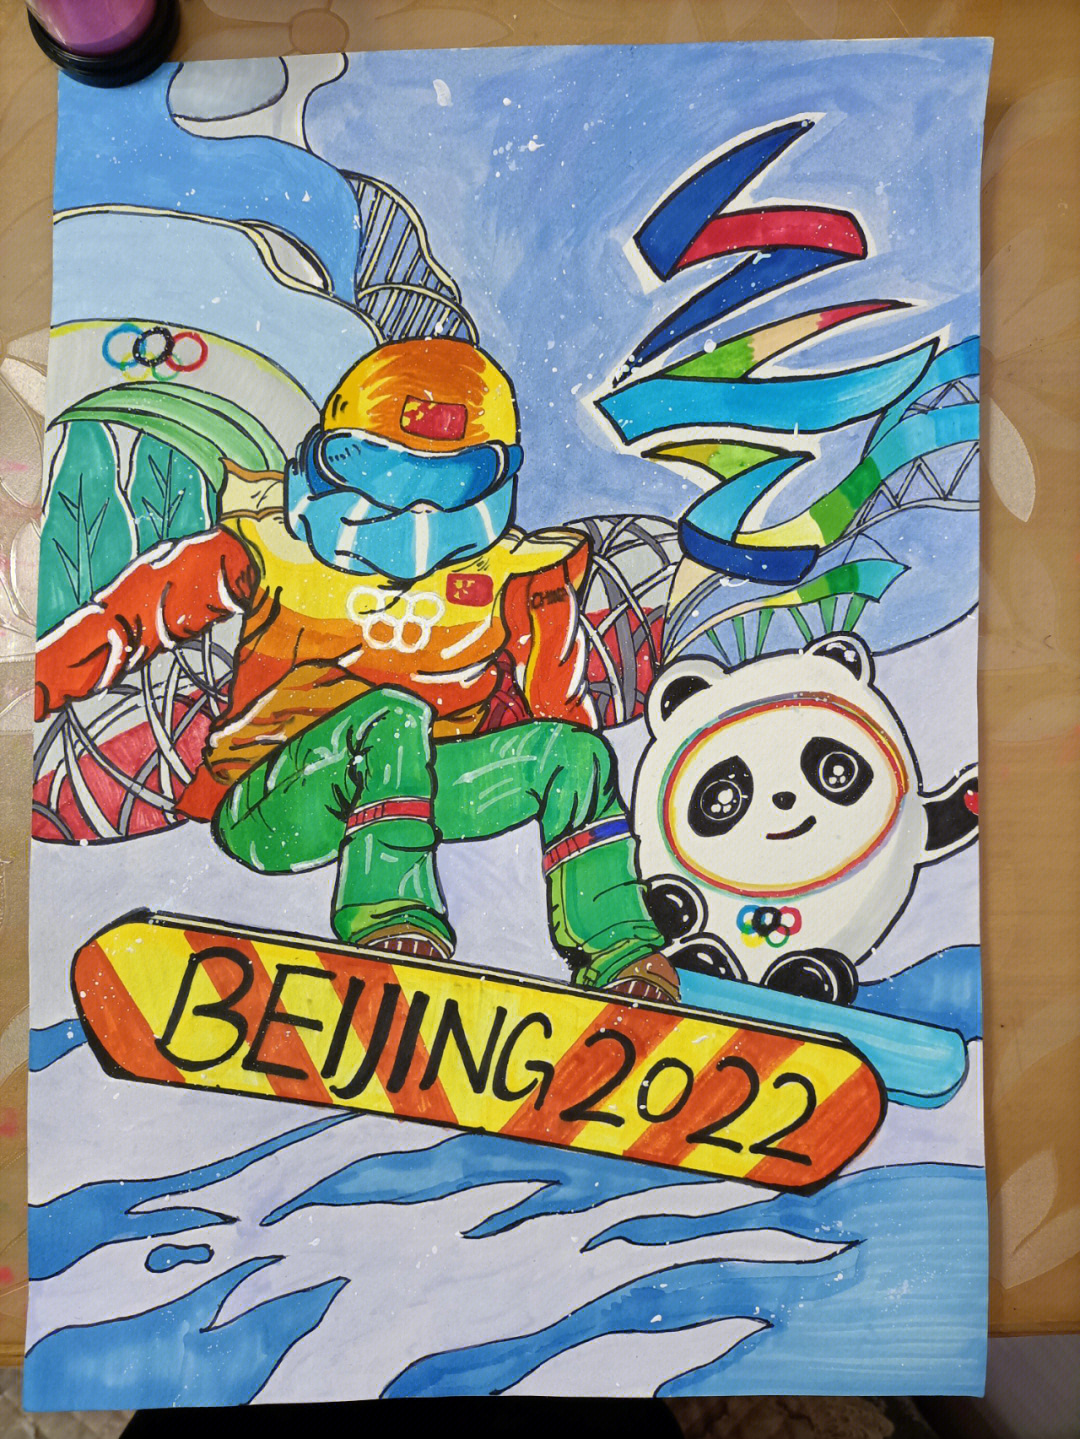 2022北京冬奥会  冬奥主题画 综合了多位大佬画作中的元素